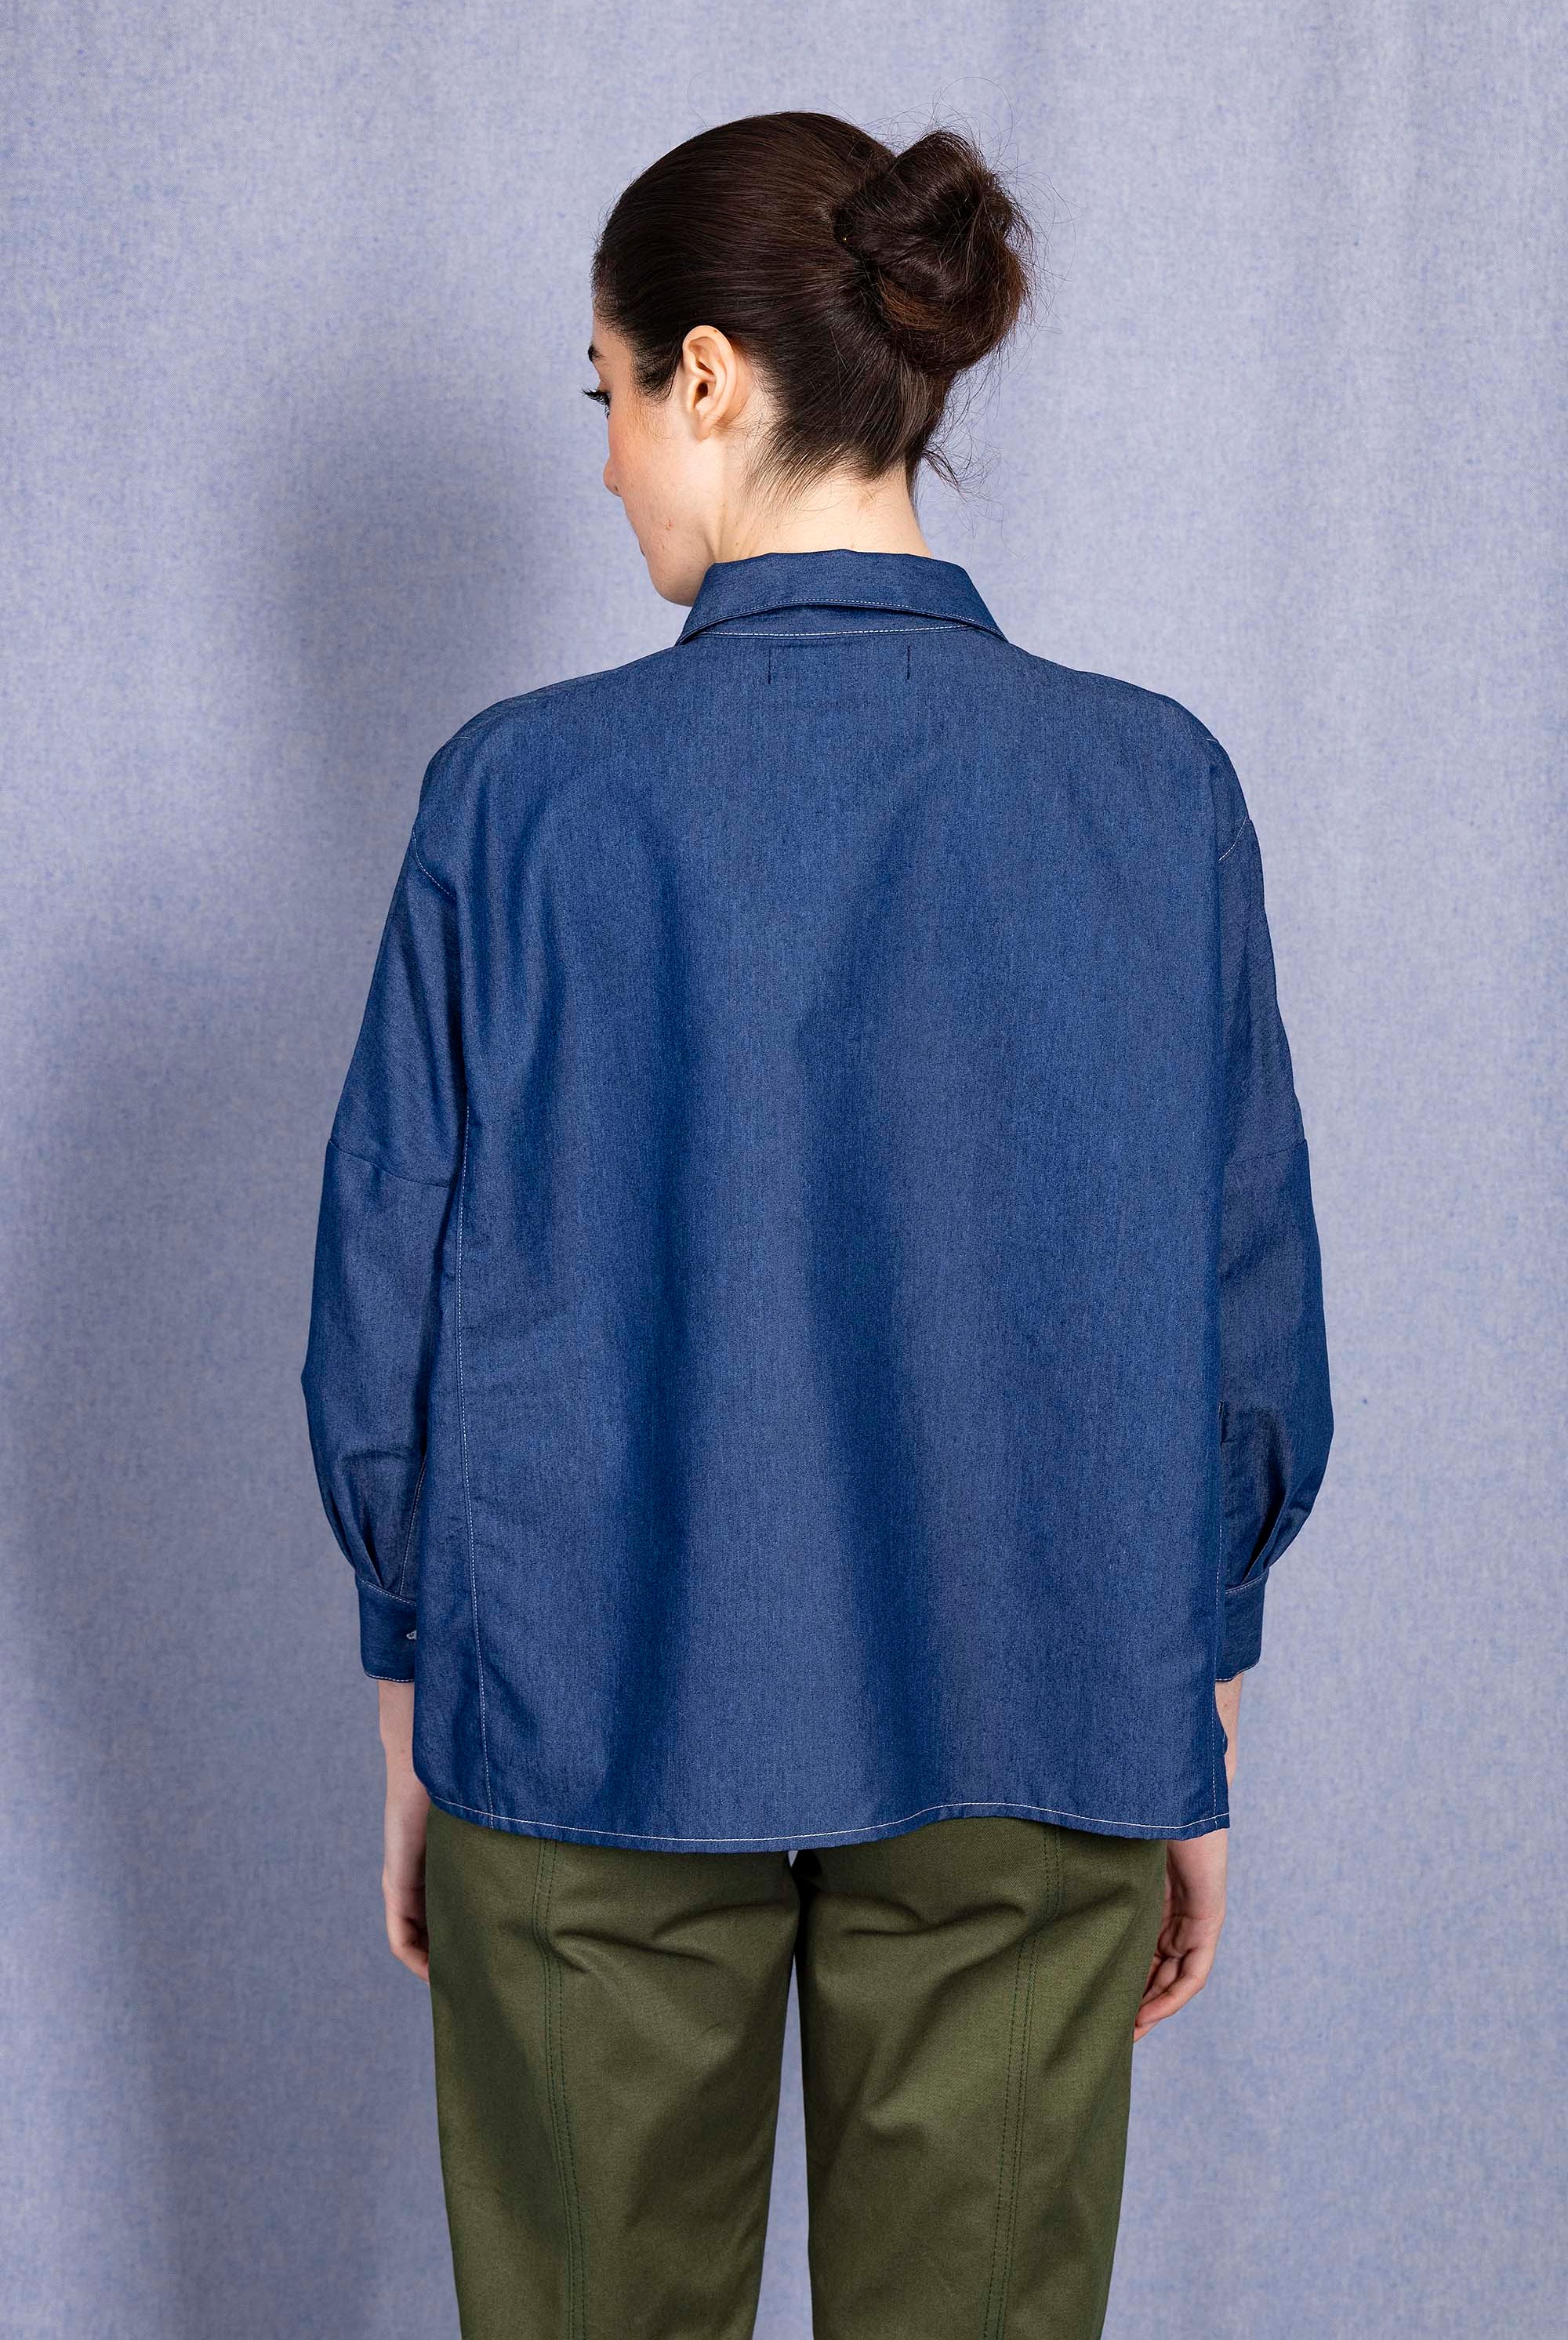 Chemise Sandra Bleu Denim chemise Misericordia, librement inspirée de différents univers